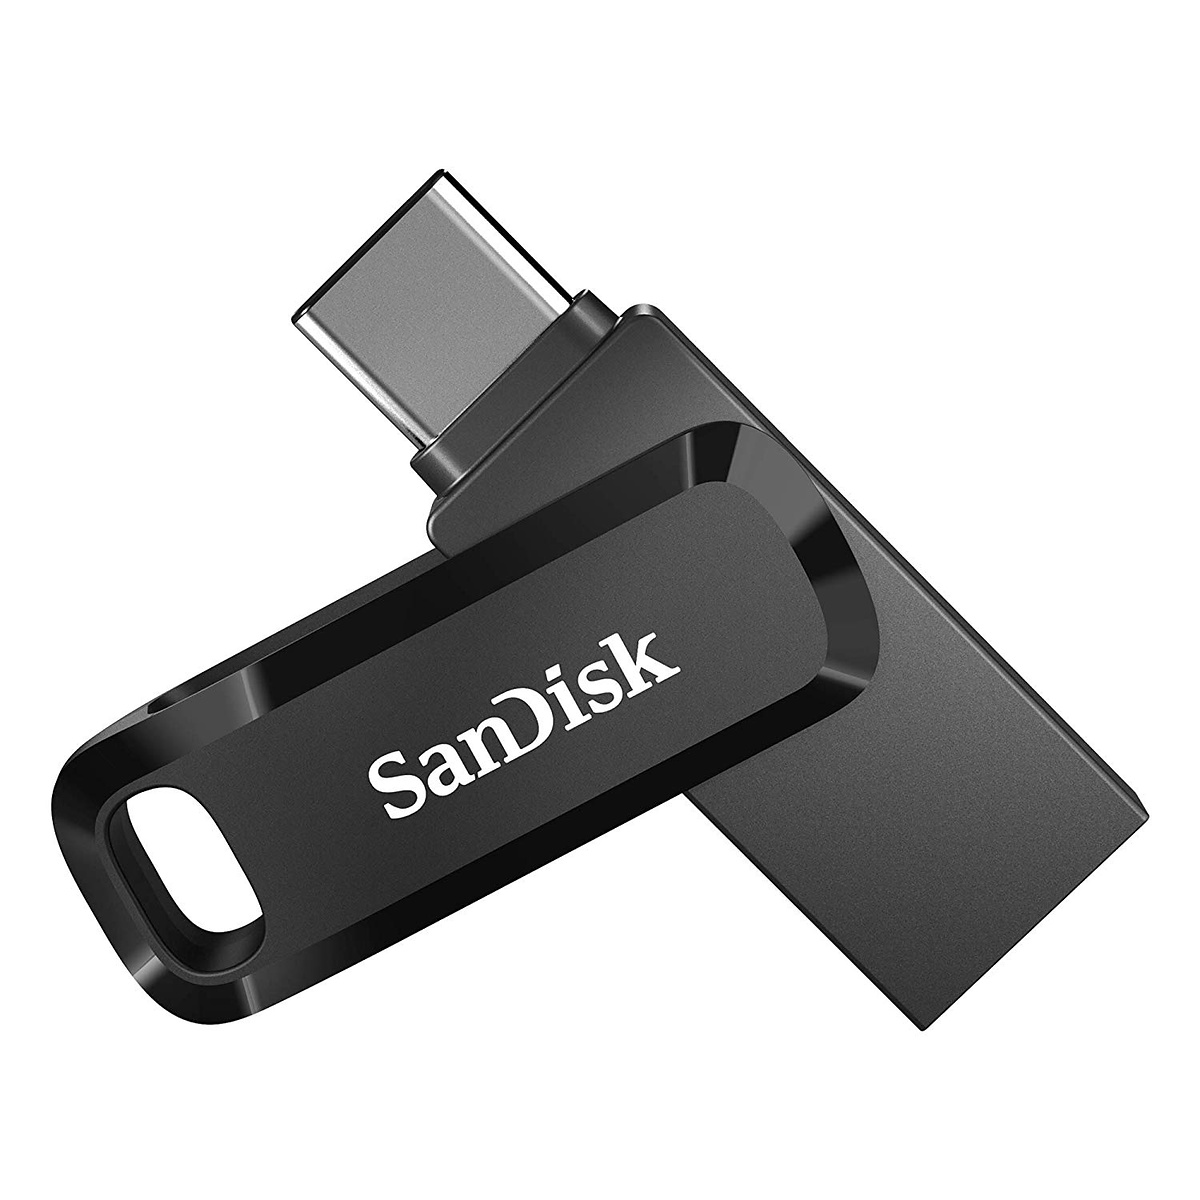 256GB SanDisk Ultra Dual Drive Go minneskort, USB-C 3.2